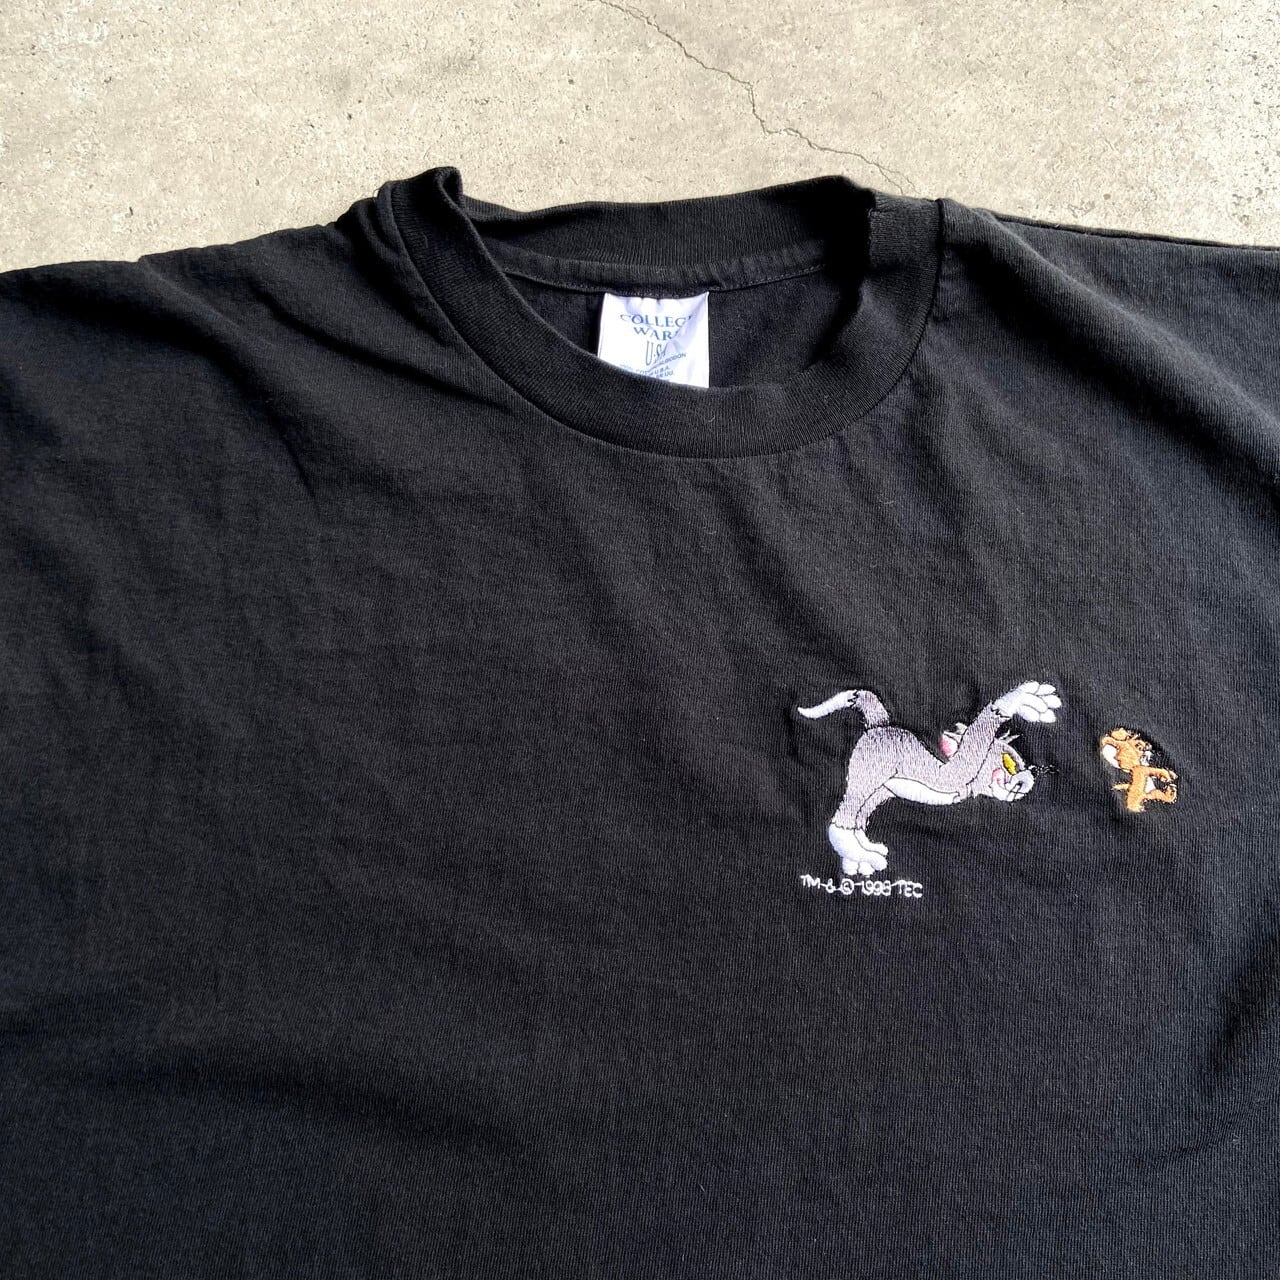 90年代 H.L.MILLER GOLD 刺繍Tシャツ USA製 メンズM ヴィンテージ /eaa244557